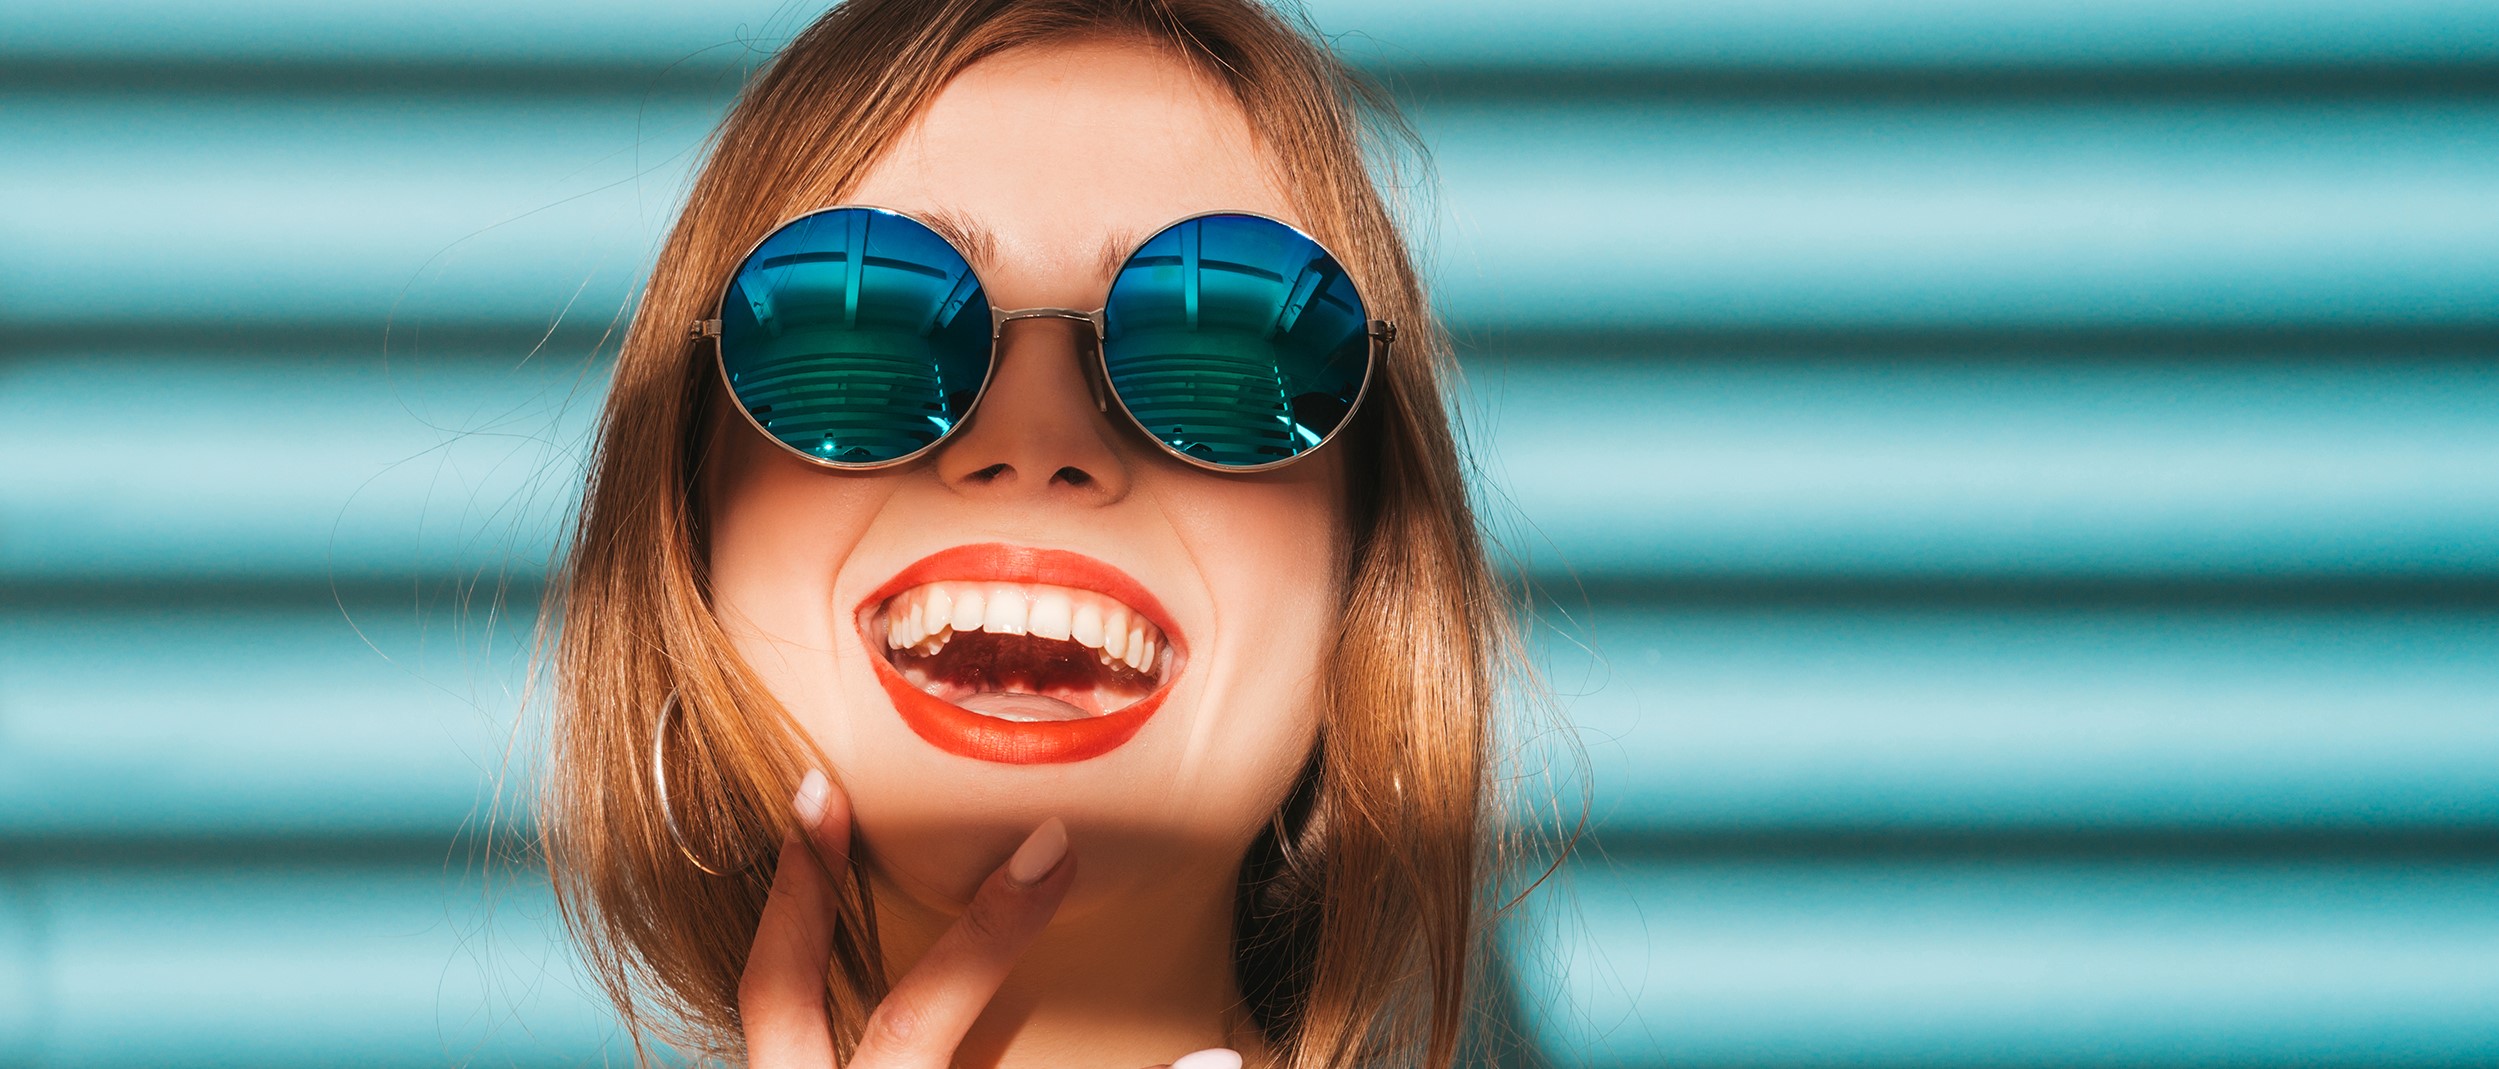 sonrisa y dientes blancos de joven mujer moderna con gafas de sol